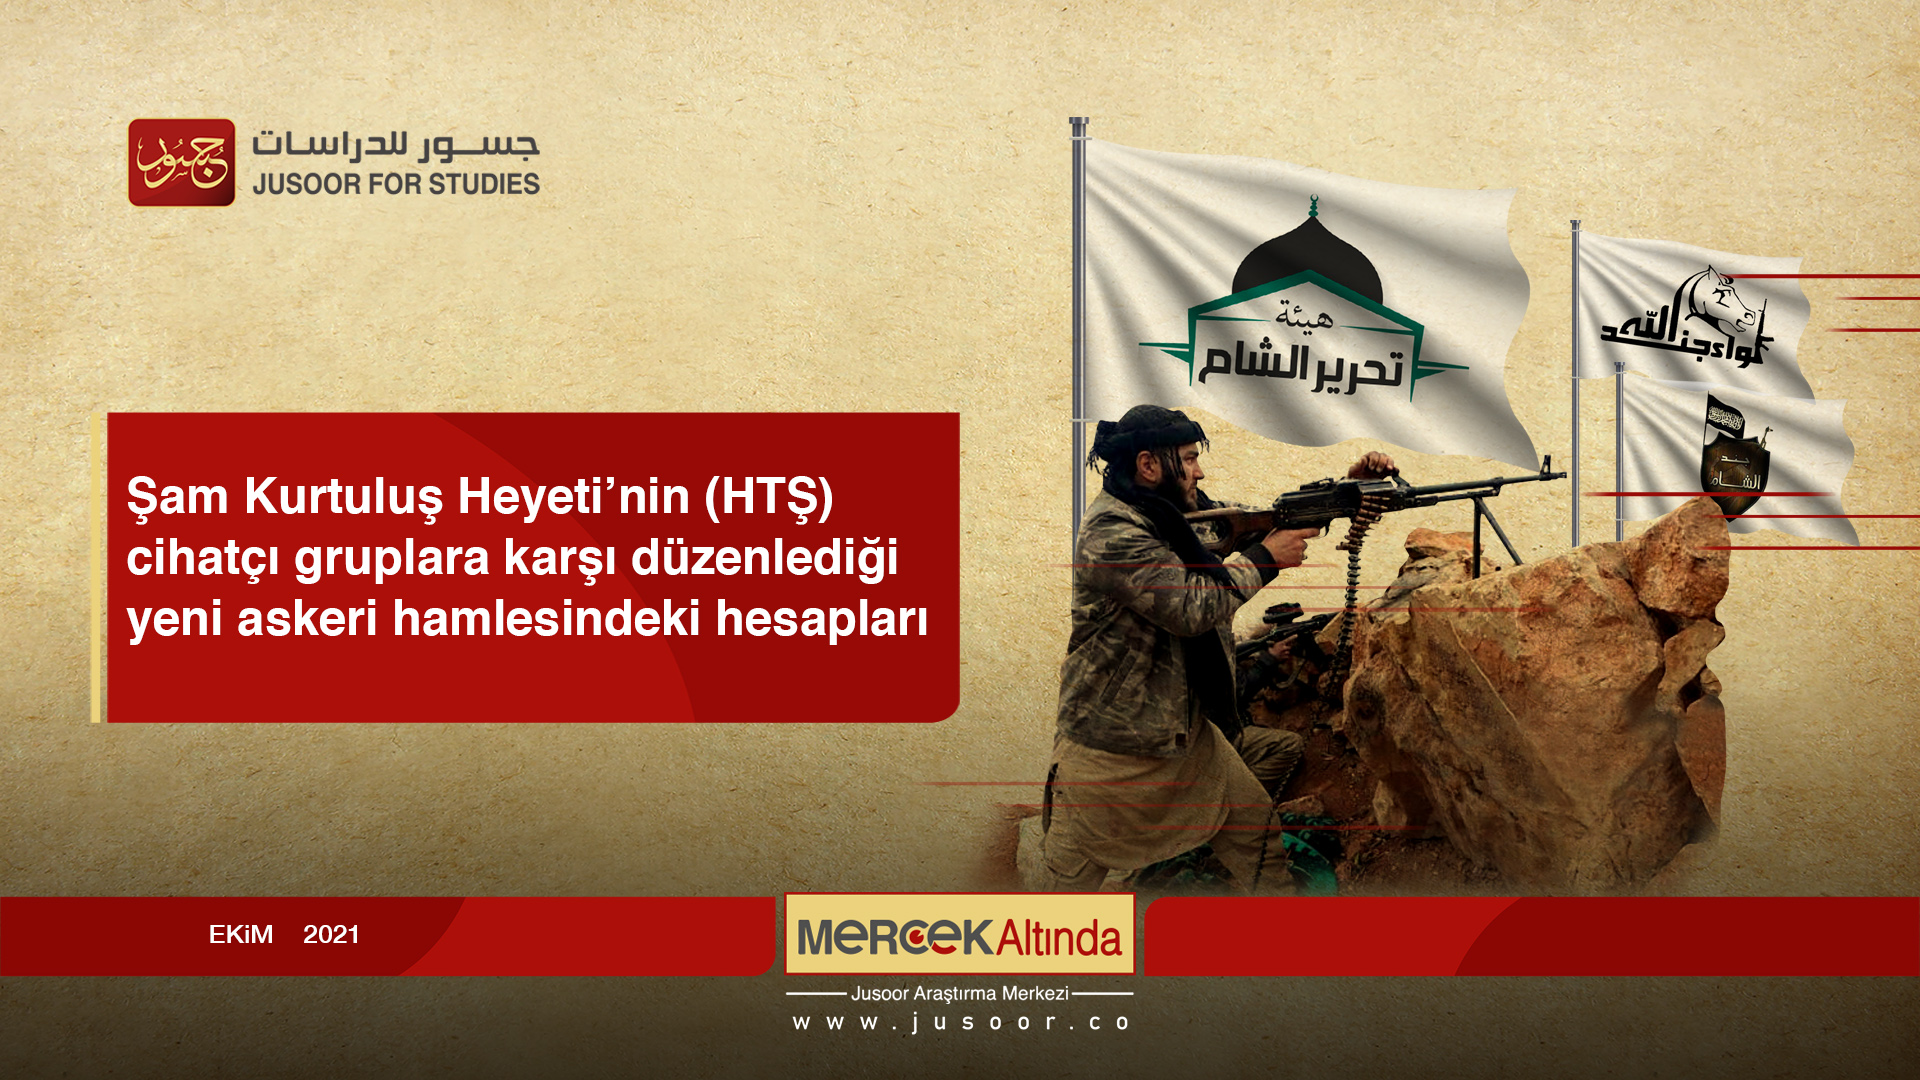 Şam Kurtuluş Heyeti’nin (HTŞ) cihatçı gruplara karşı düzenlediği yeni askeri hamlesindeki hesapları